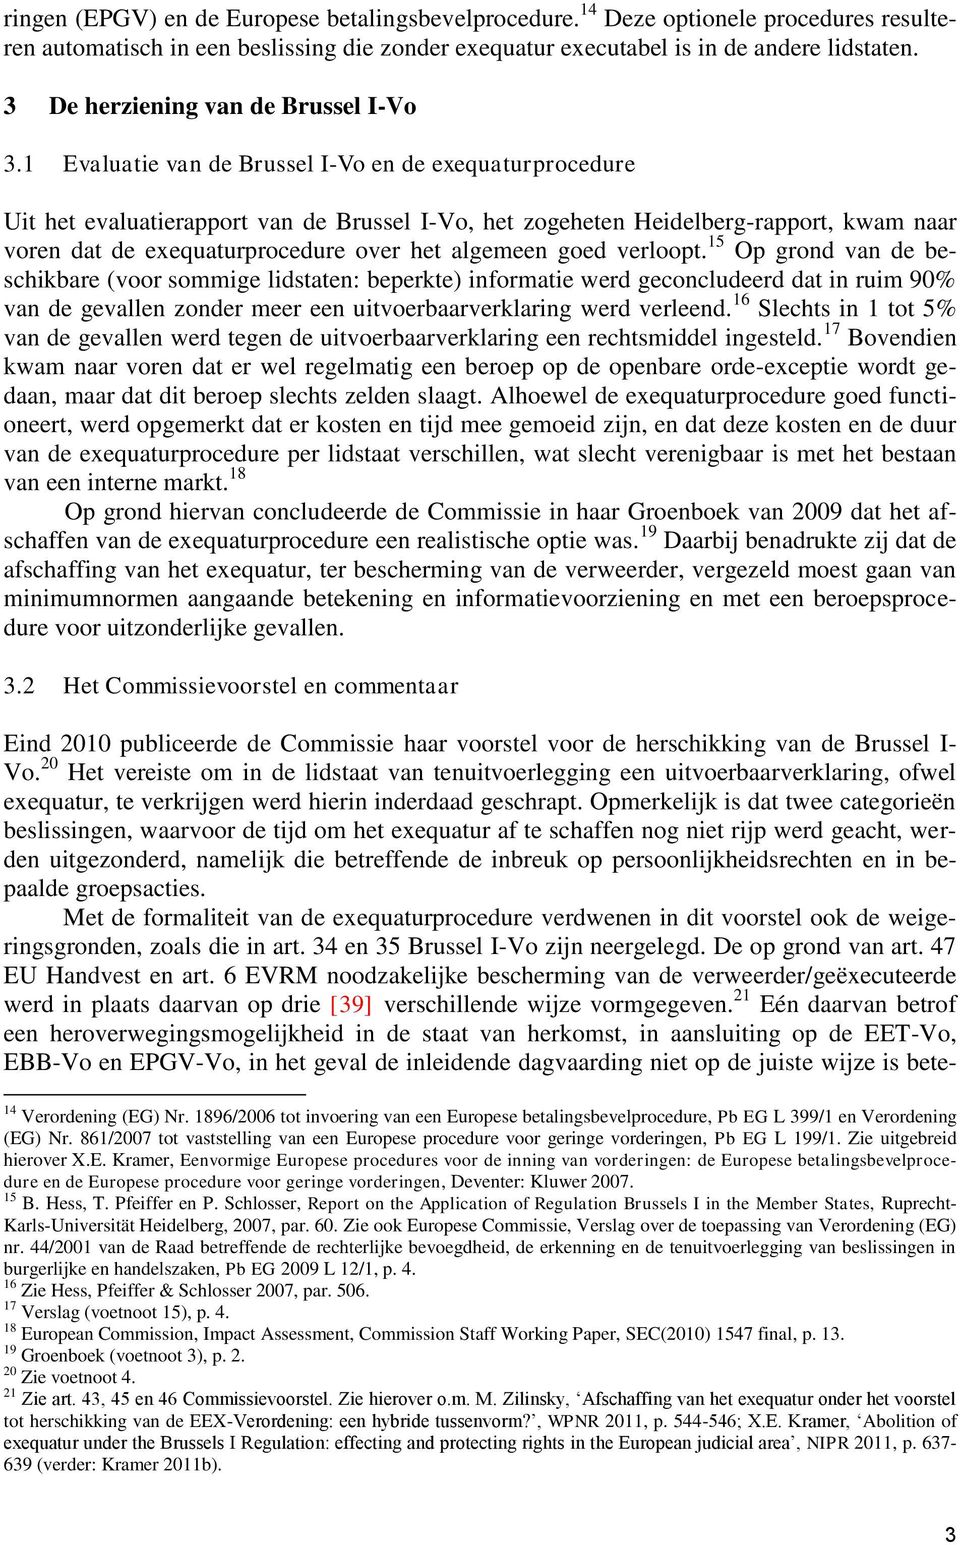 1 Evaluatie van de Brussel I-Vo en de exequaturprocedure Uit het evaluatierapport van de Brussel I-Vo, het zogeheten Heidelberg-rapport, kwam naar voren dat de exequaturprocedure over het algemeen